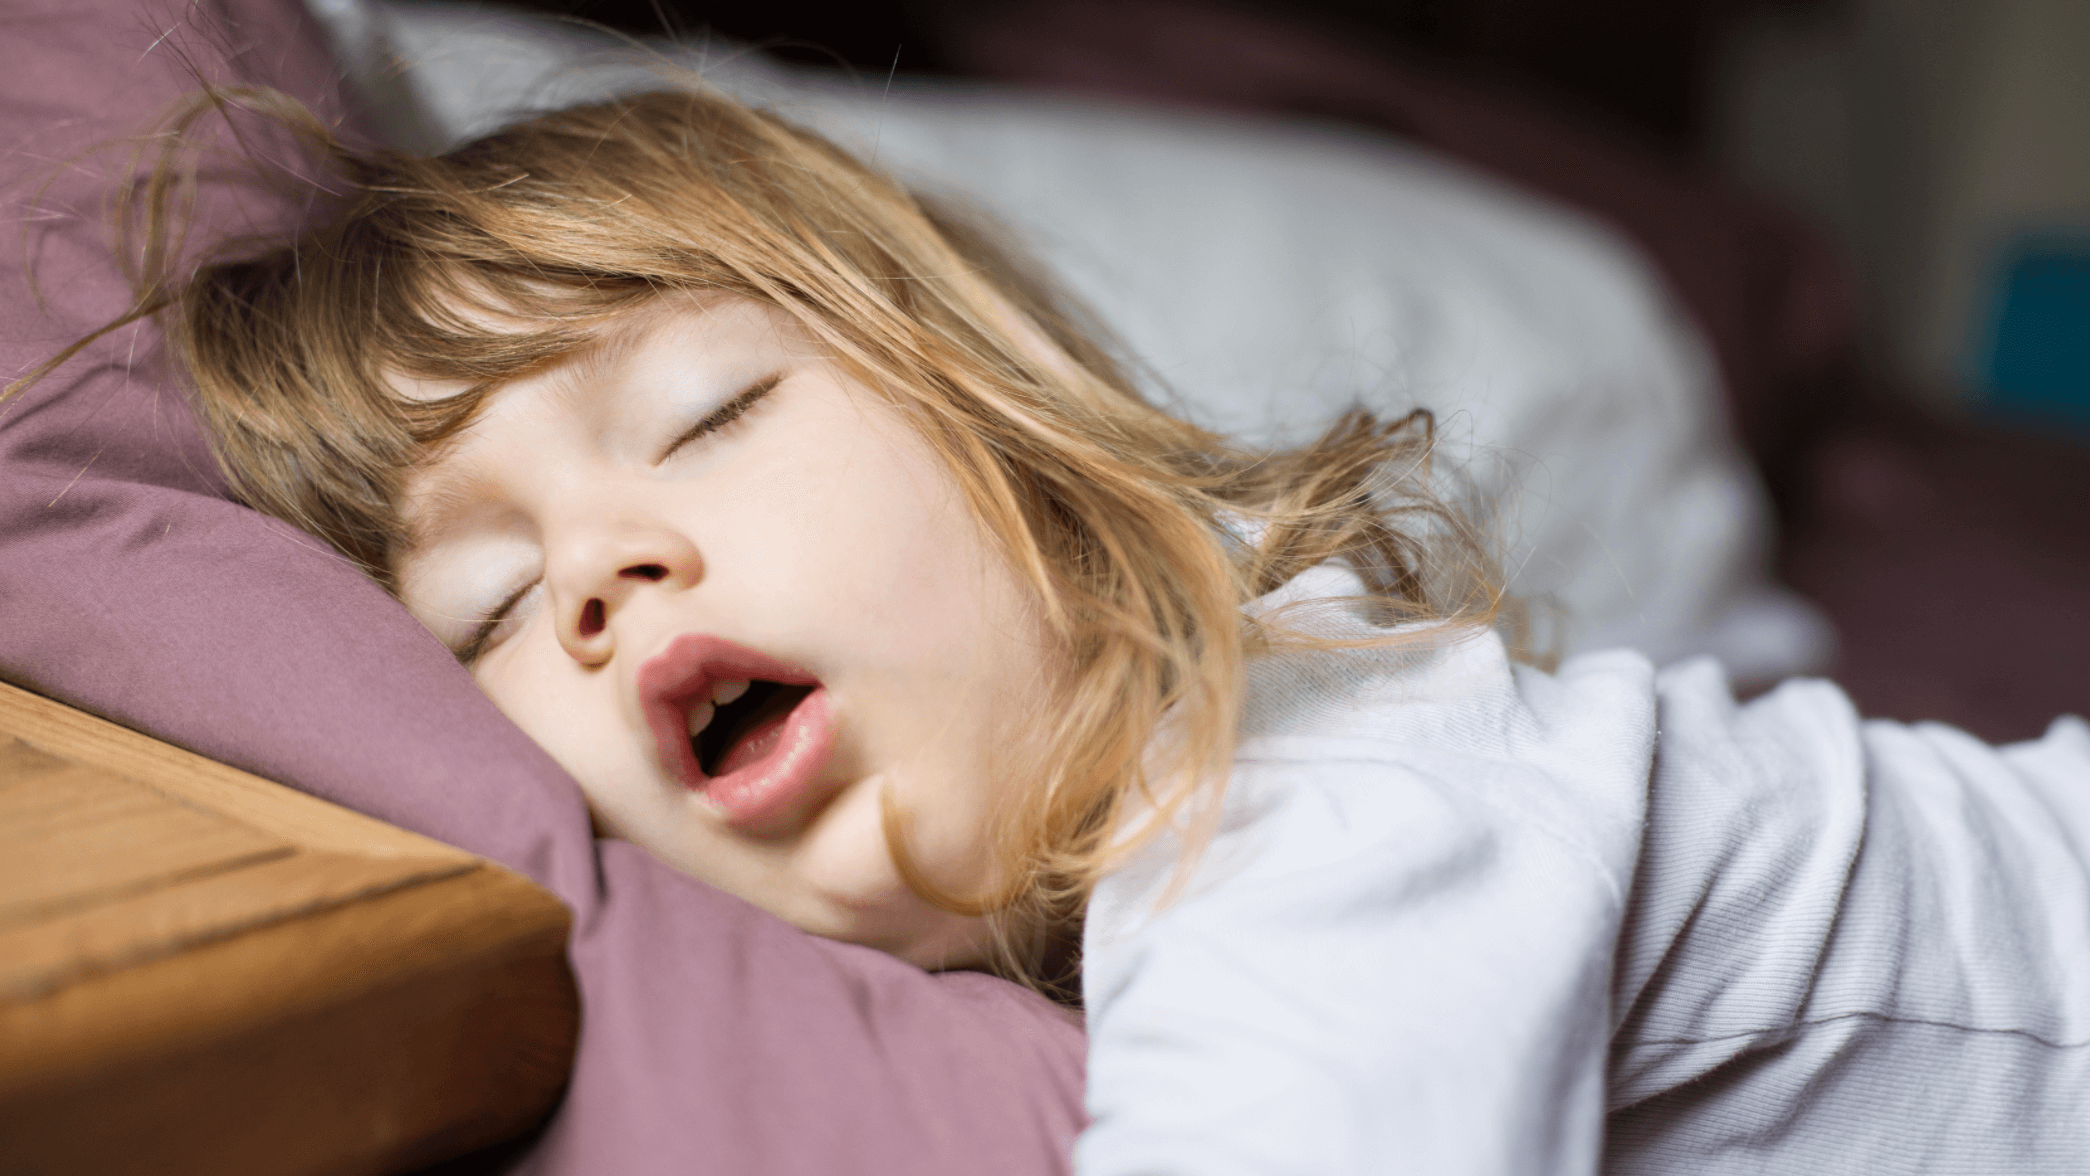 Sleeping daughter. Ребенок спит с открытым ртом. Ребенок спит. Дети спят с открытыми ртами. Девочка спит.